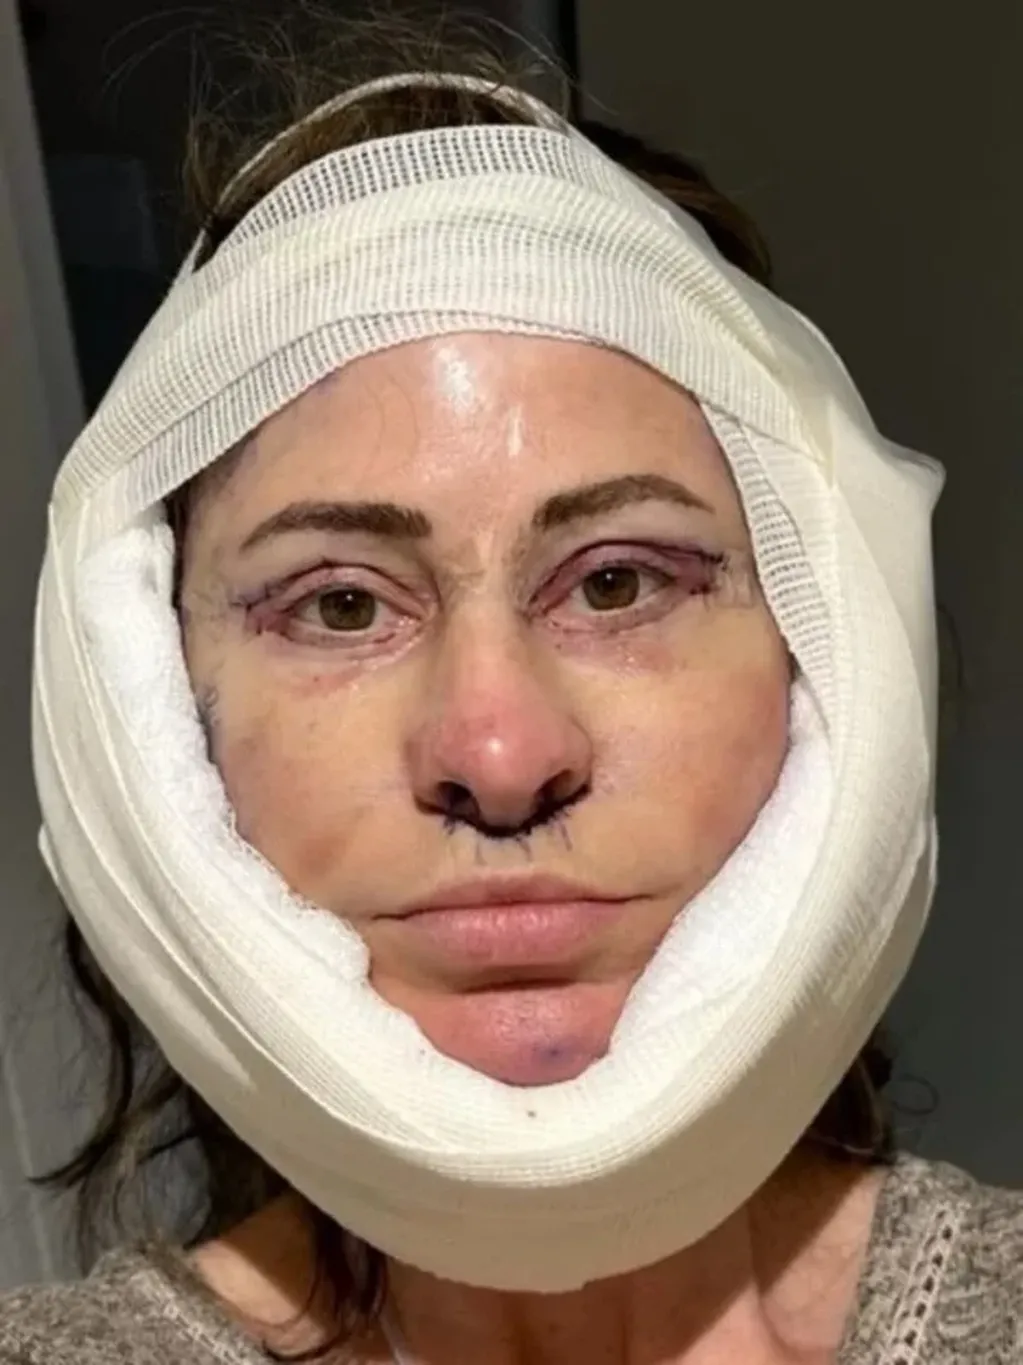 Kelly Beasley durante la operación. Foto: SWNS